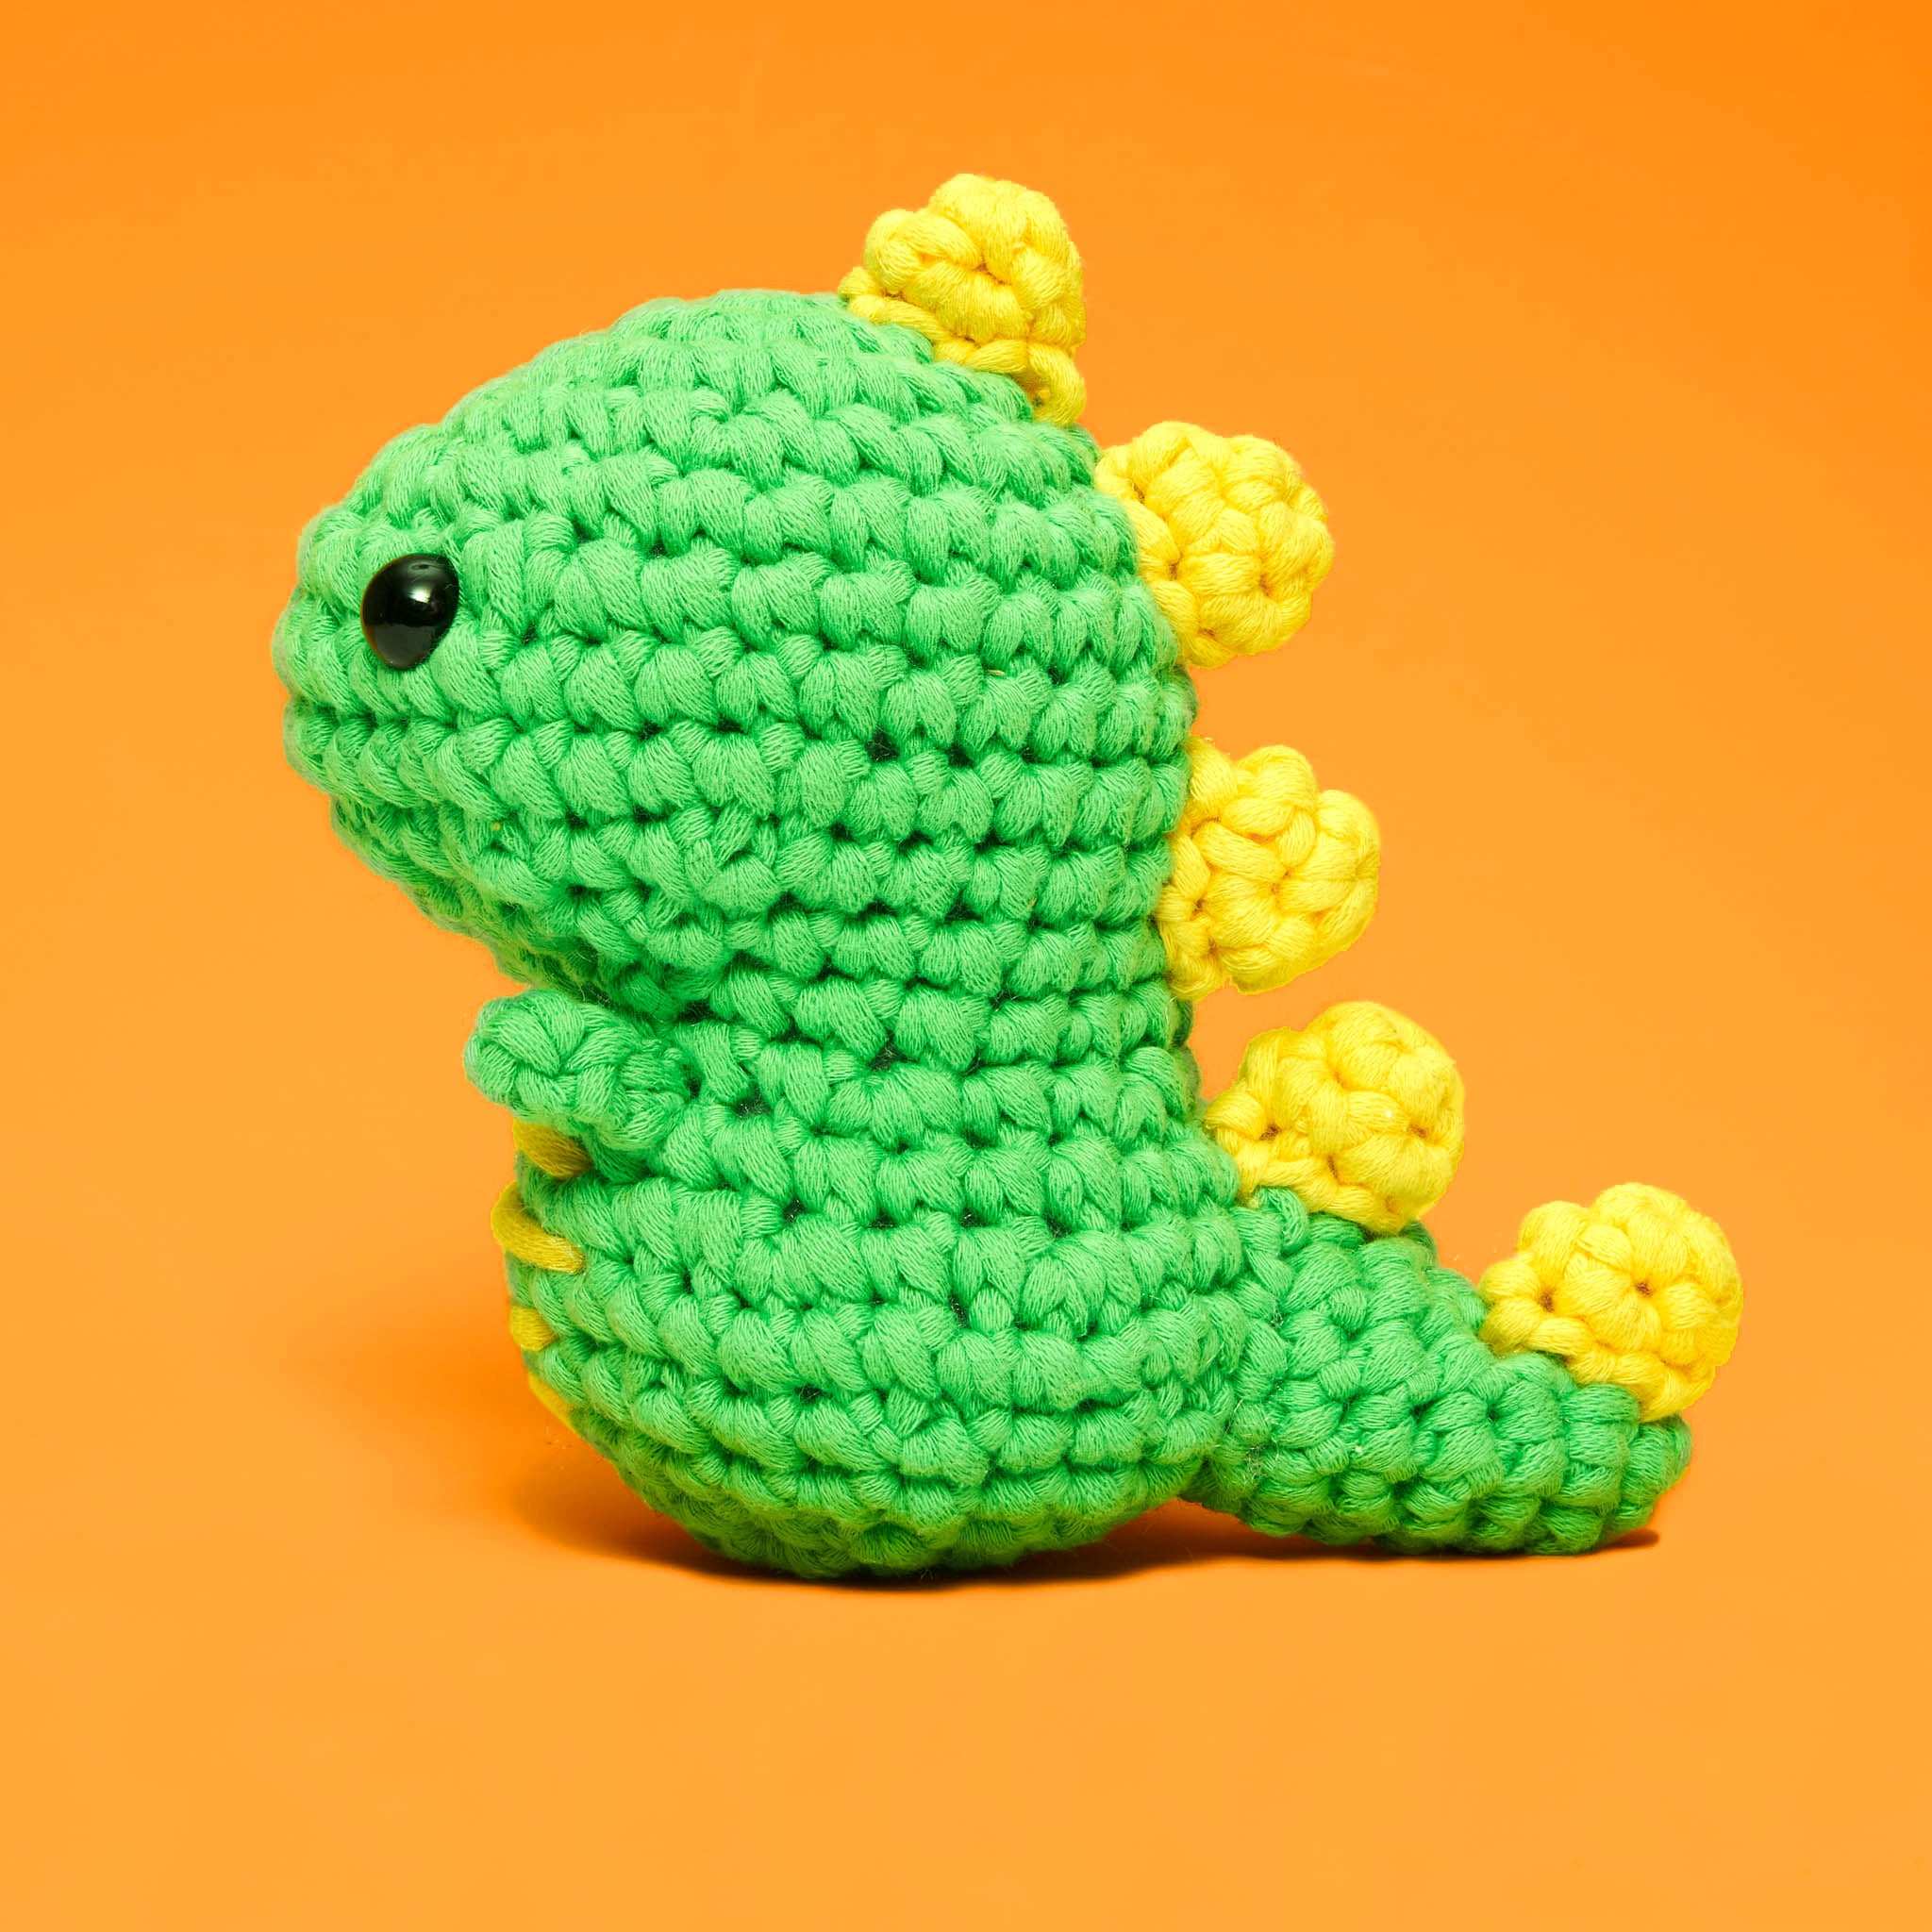 UnityStar Crochet Kit For Beginners - Animals Crochet 